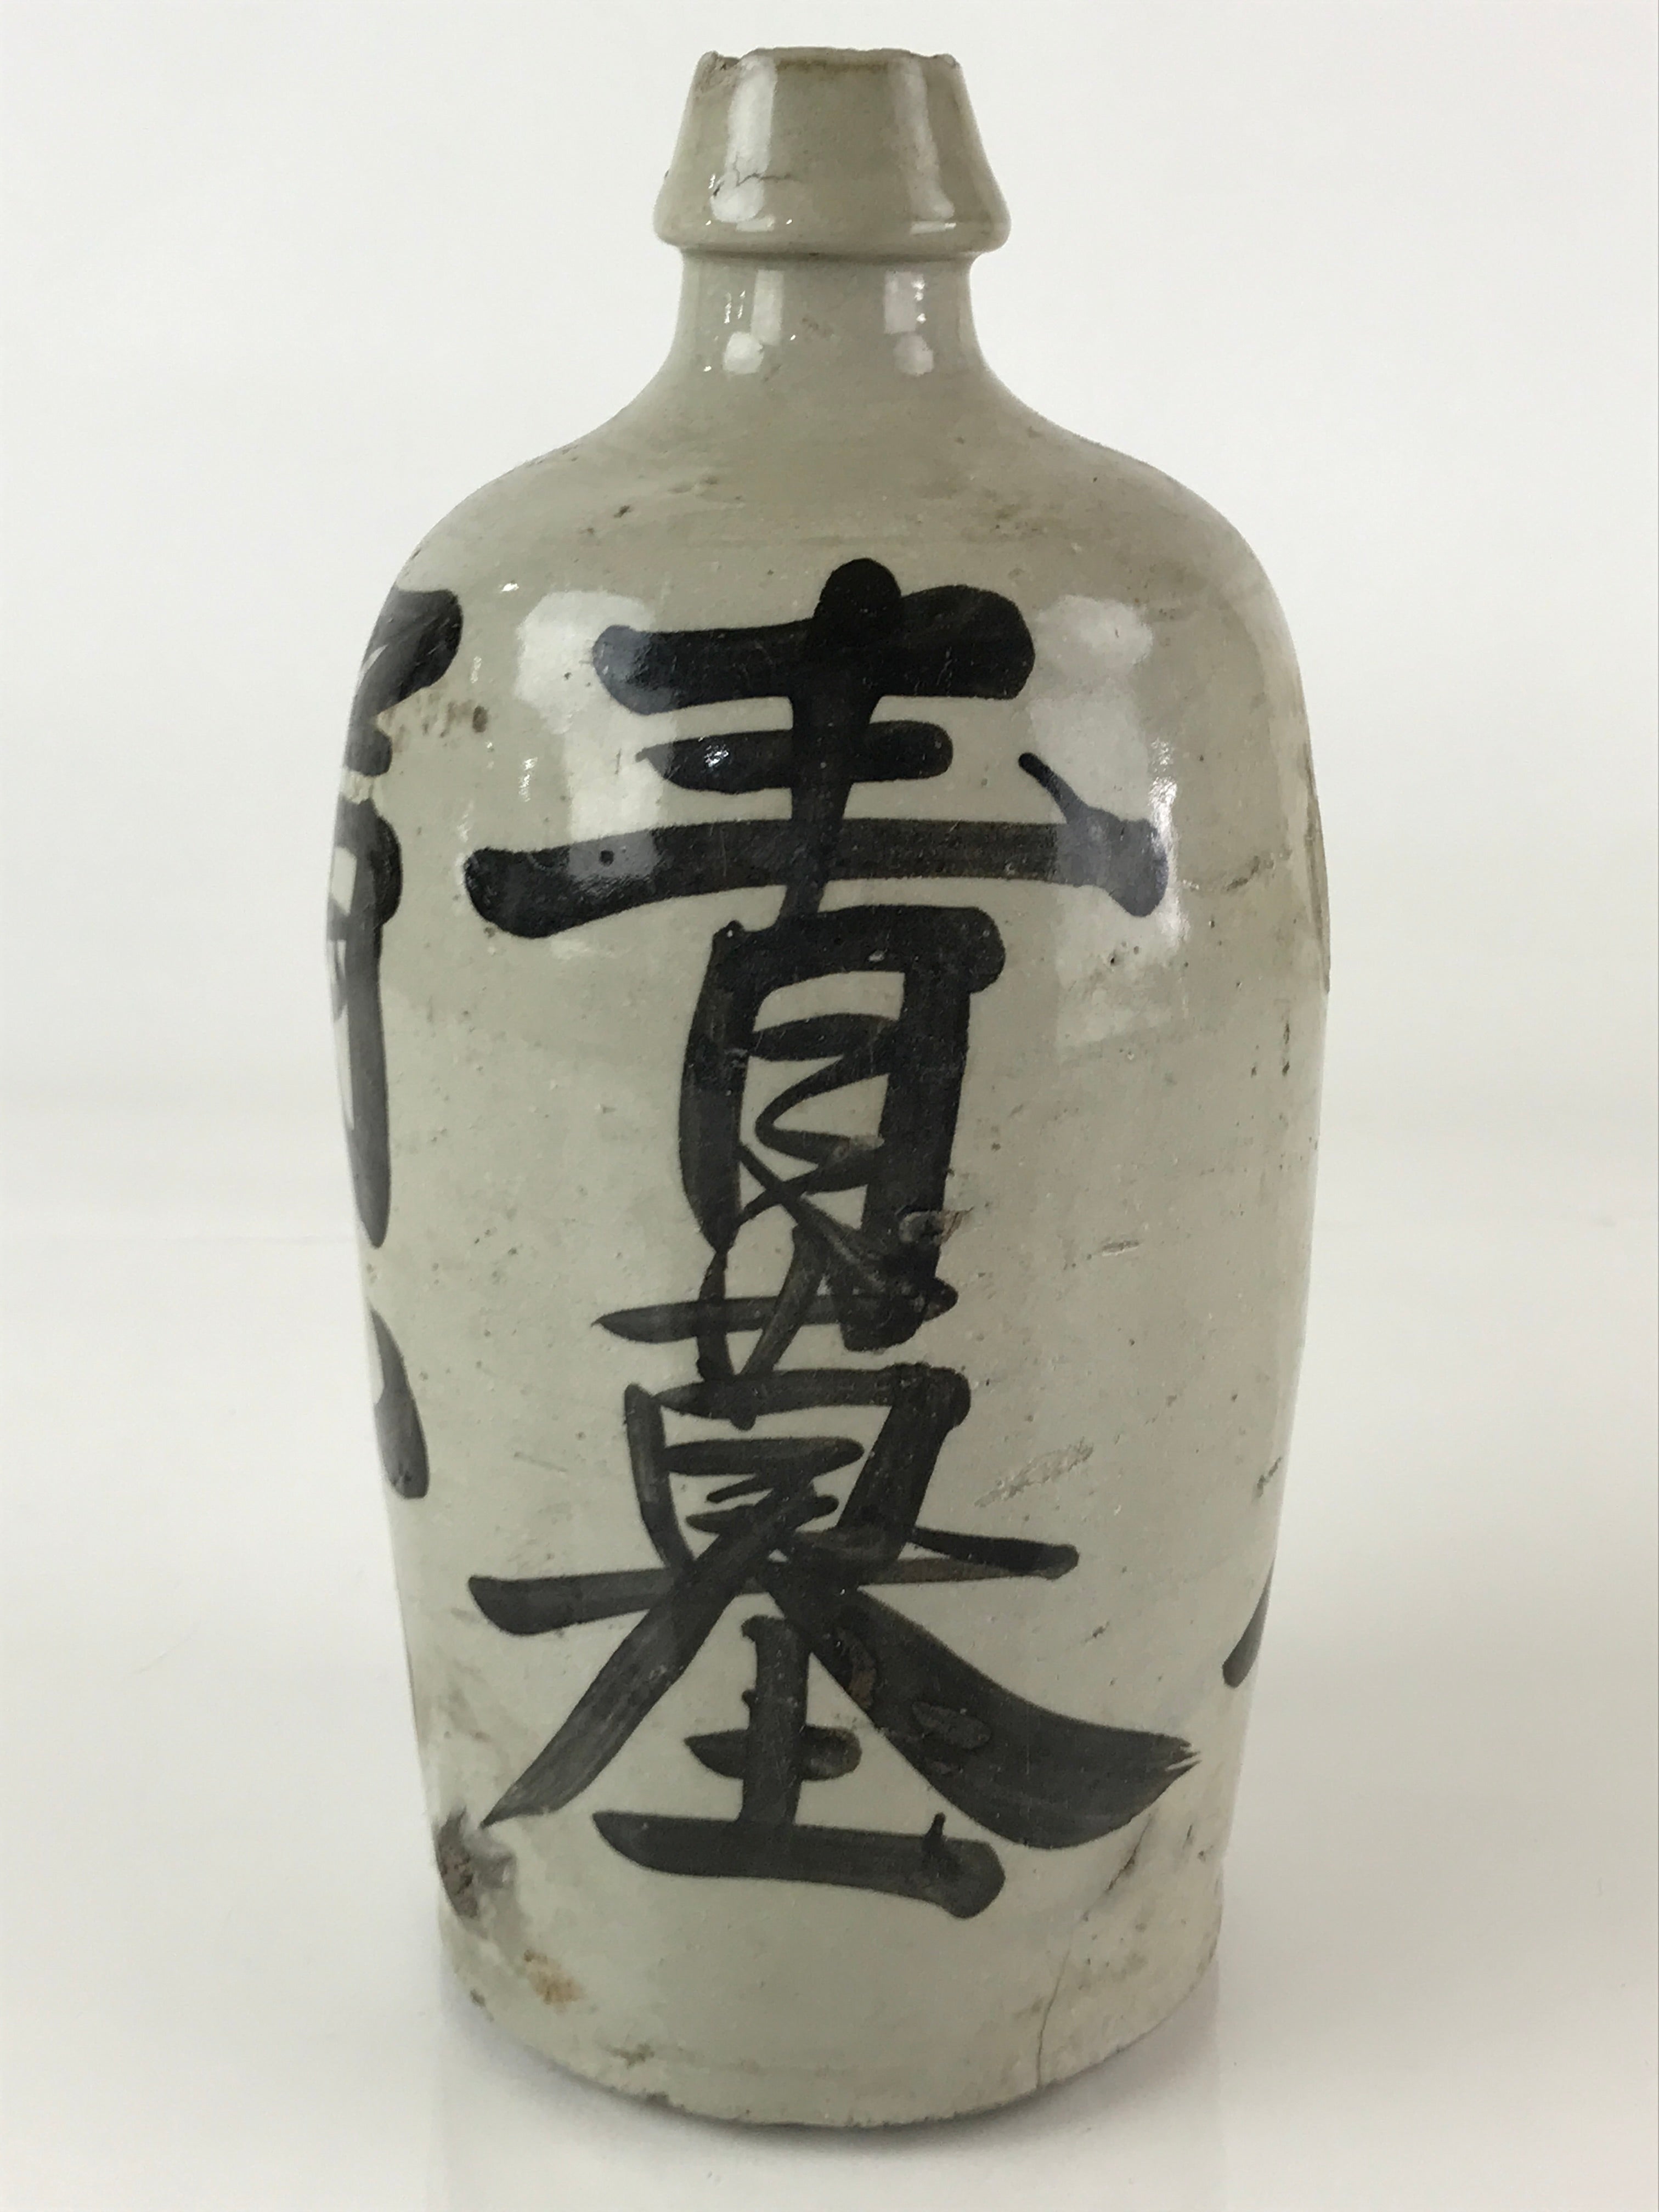 Japanese Ceramic Sake Bottle Tokkuri Vtg Pottery Gray Hand-Written Kanji TS485